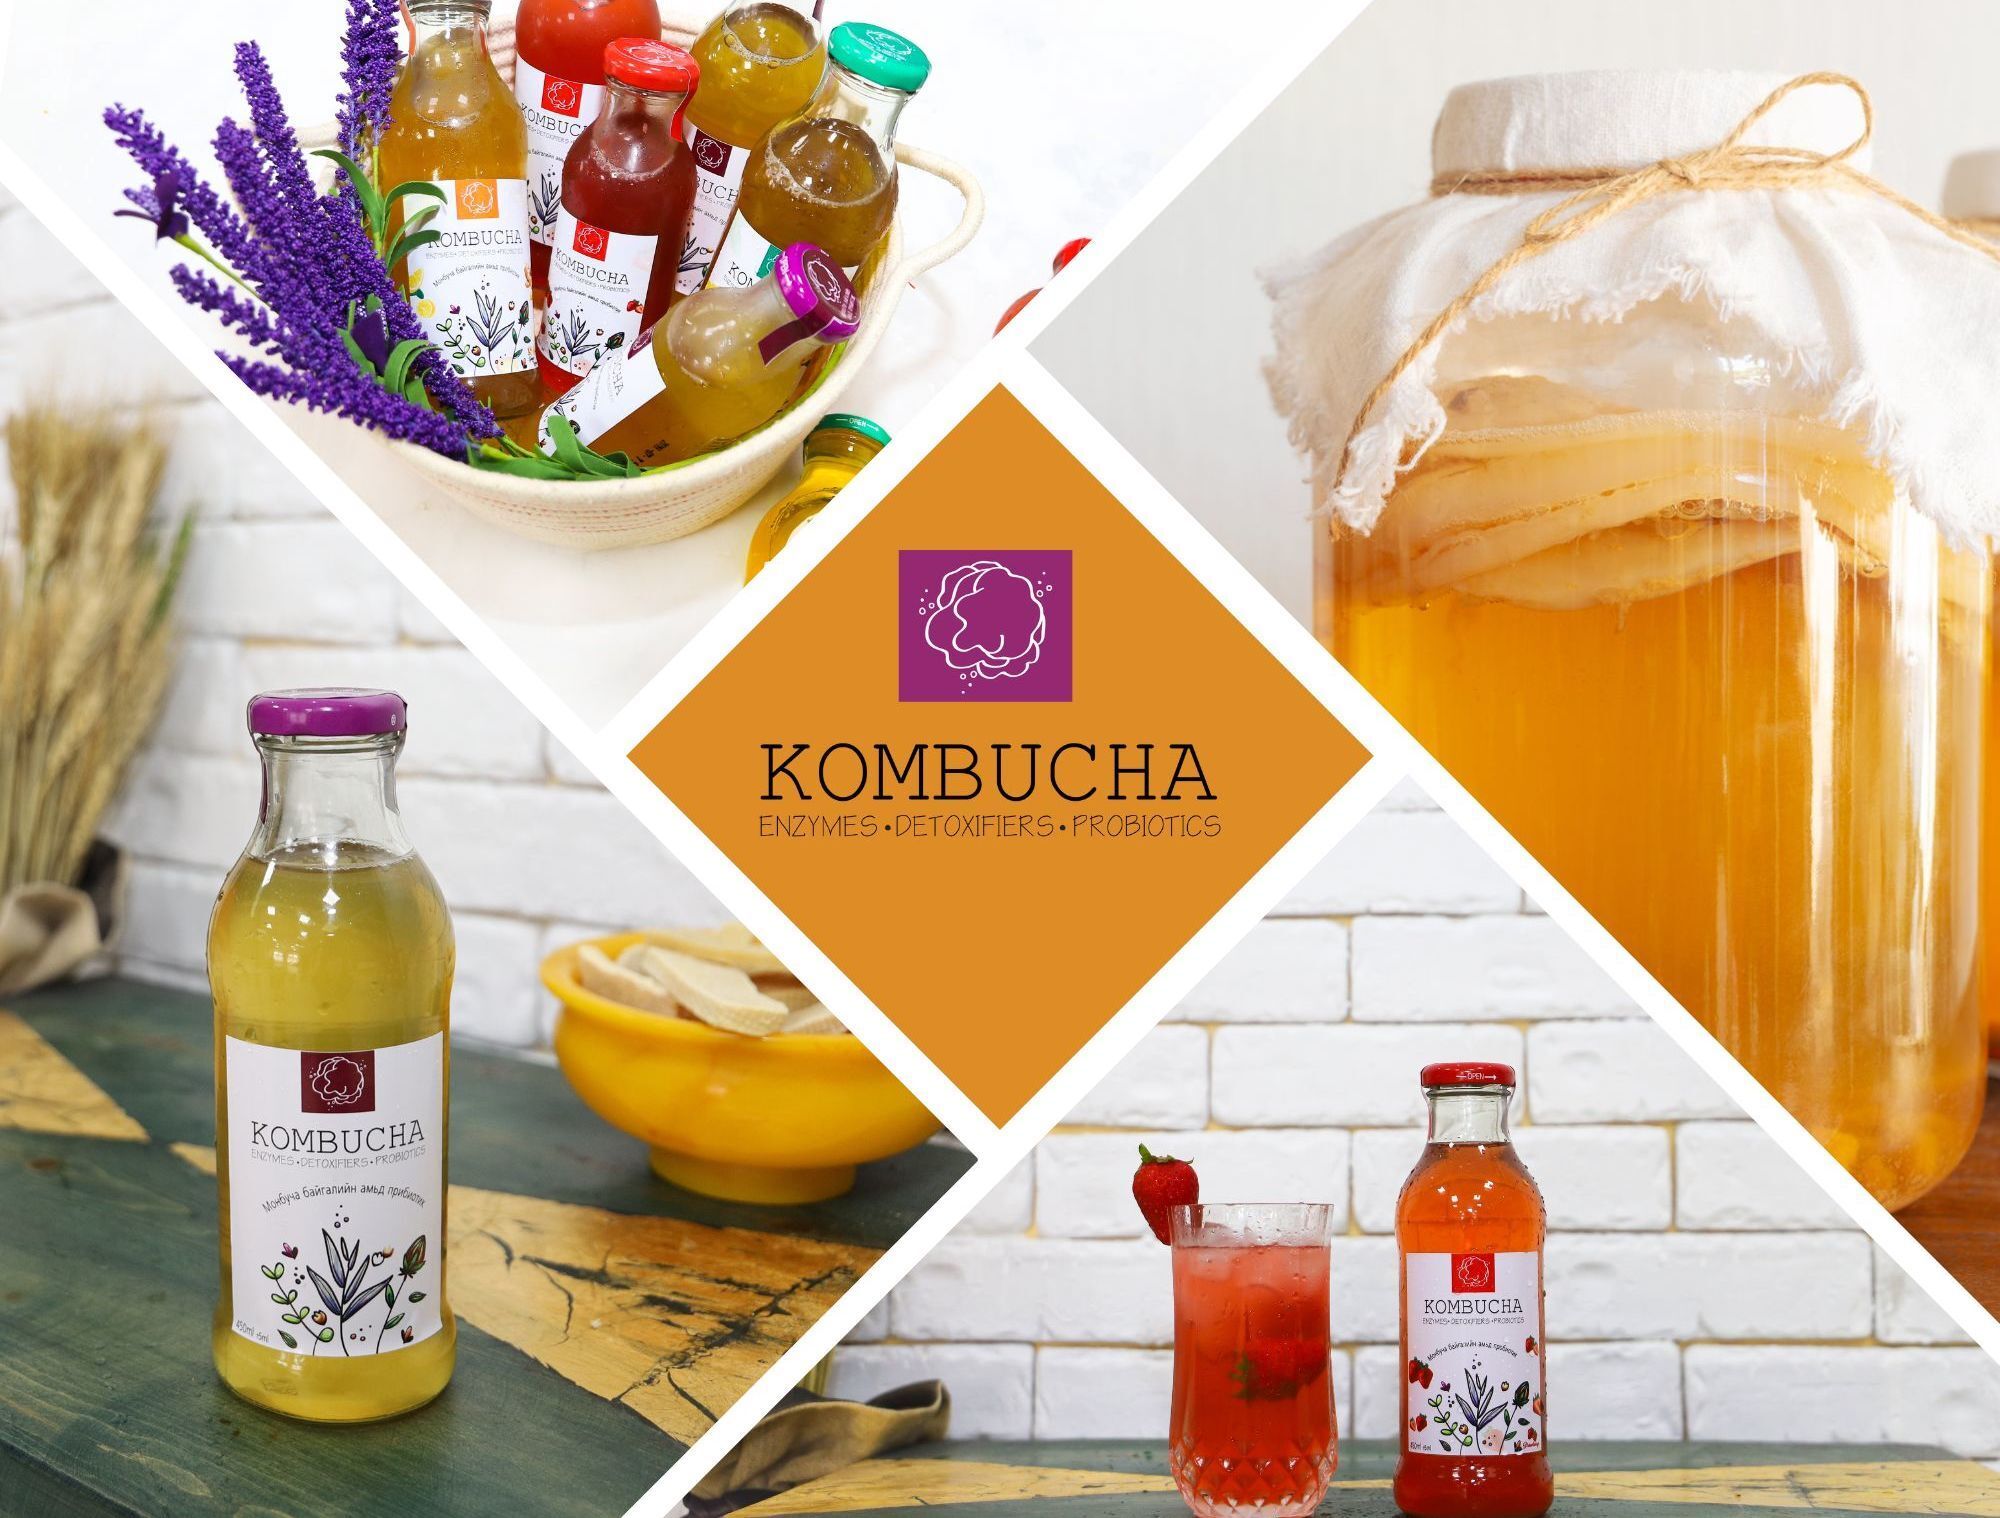 モンゴル老舗のコンブチャメーカー「Kombucha Mongolia」
イーデパ・ワールド株式会社と新商品を開発！3月発売予定